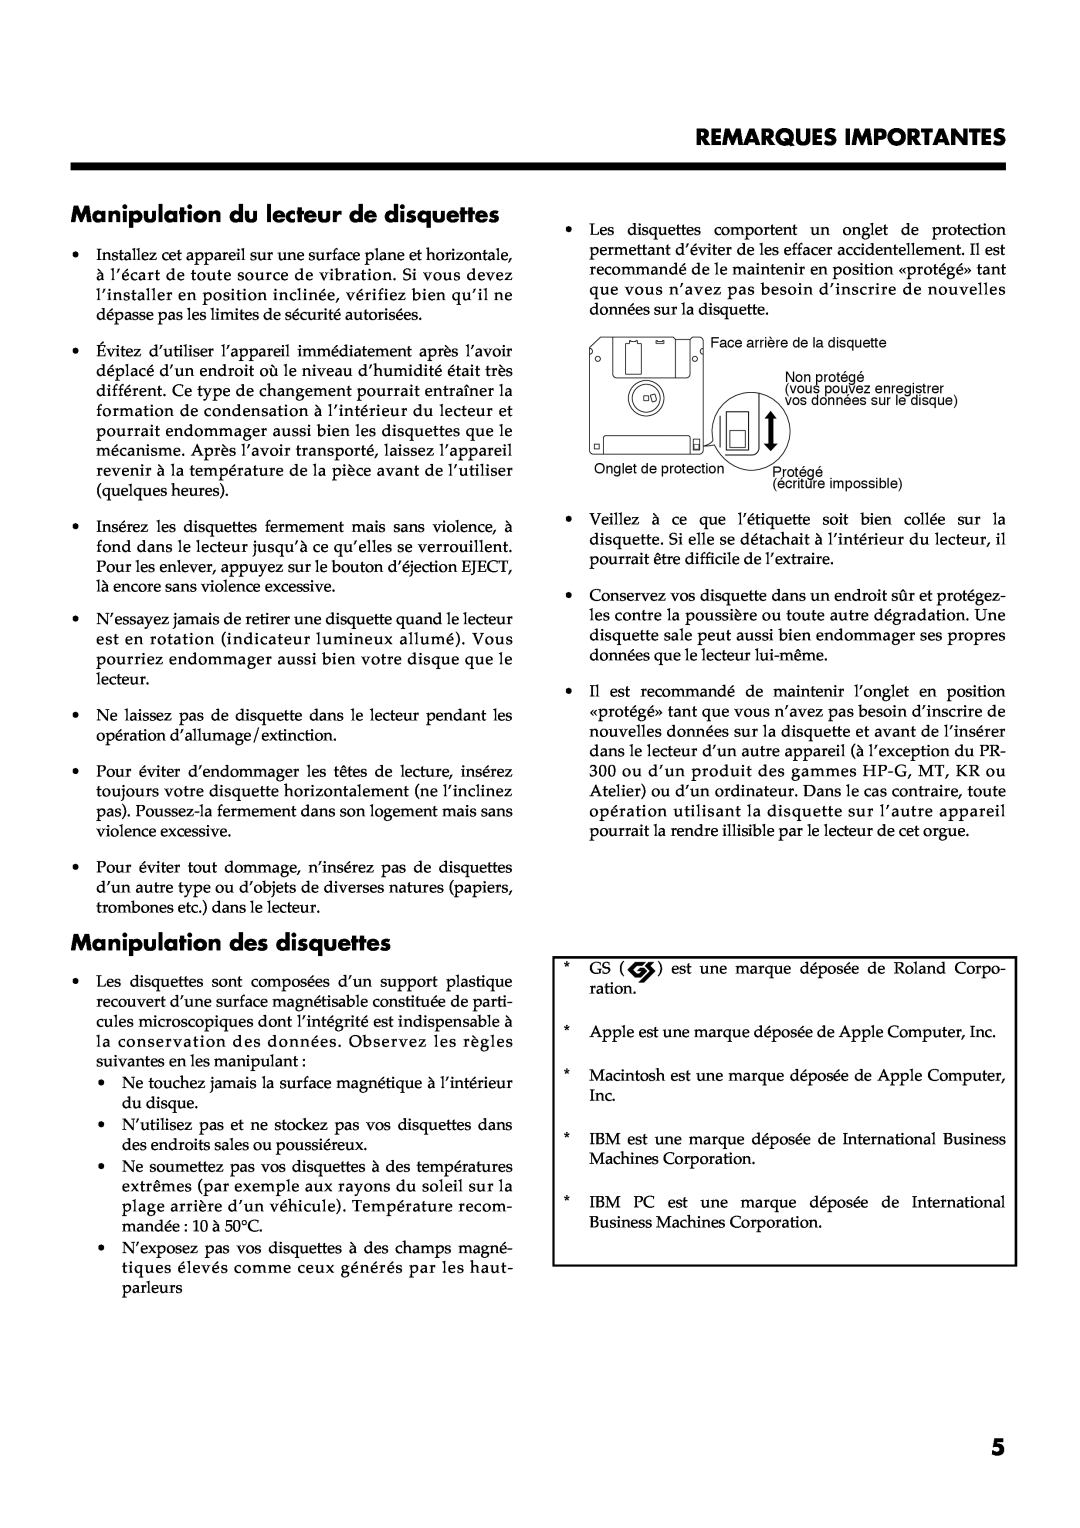 Roland AT30R manual Remarques Importantes, Manipulation du lecteur de disquettes, Manipulation des disquettes, ####, 1#+.3# 